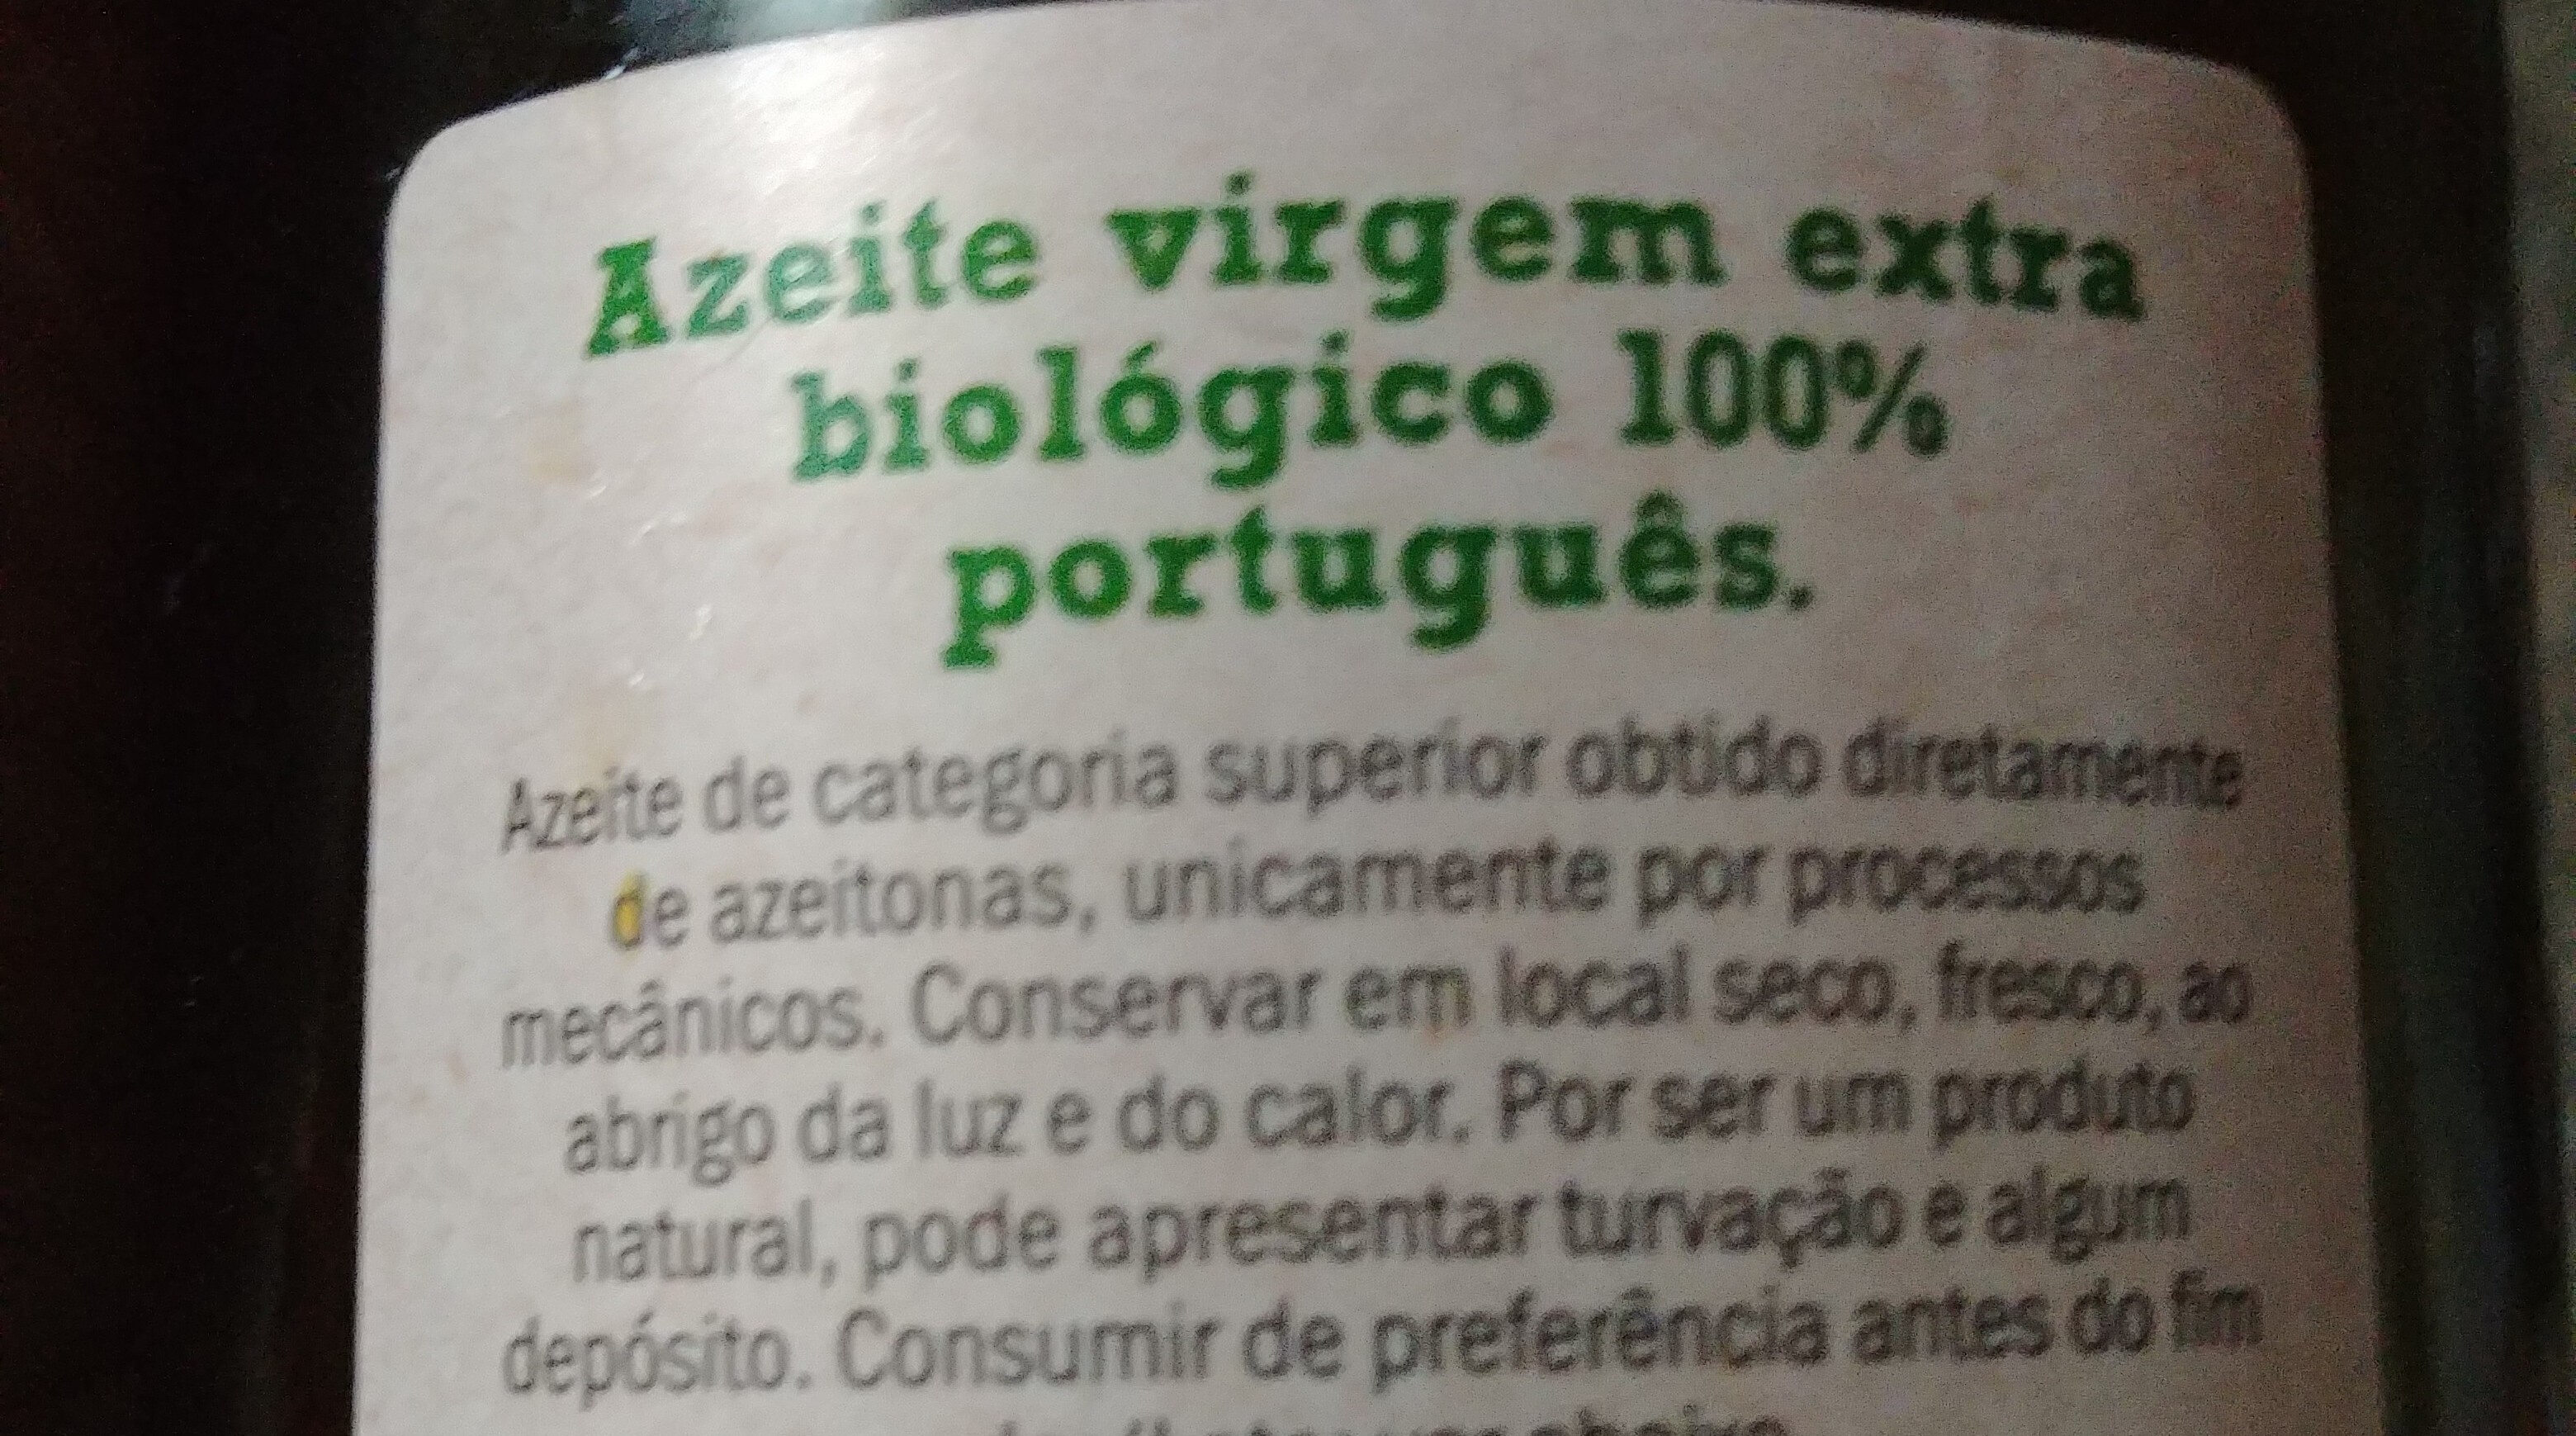 Aceite virgen extra bio - Ingredients